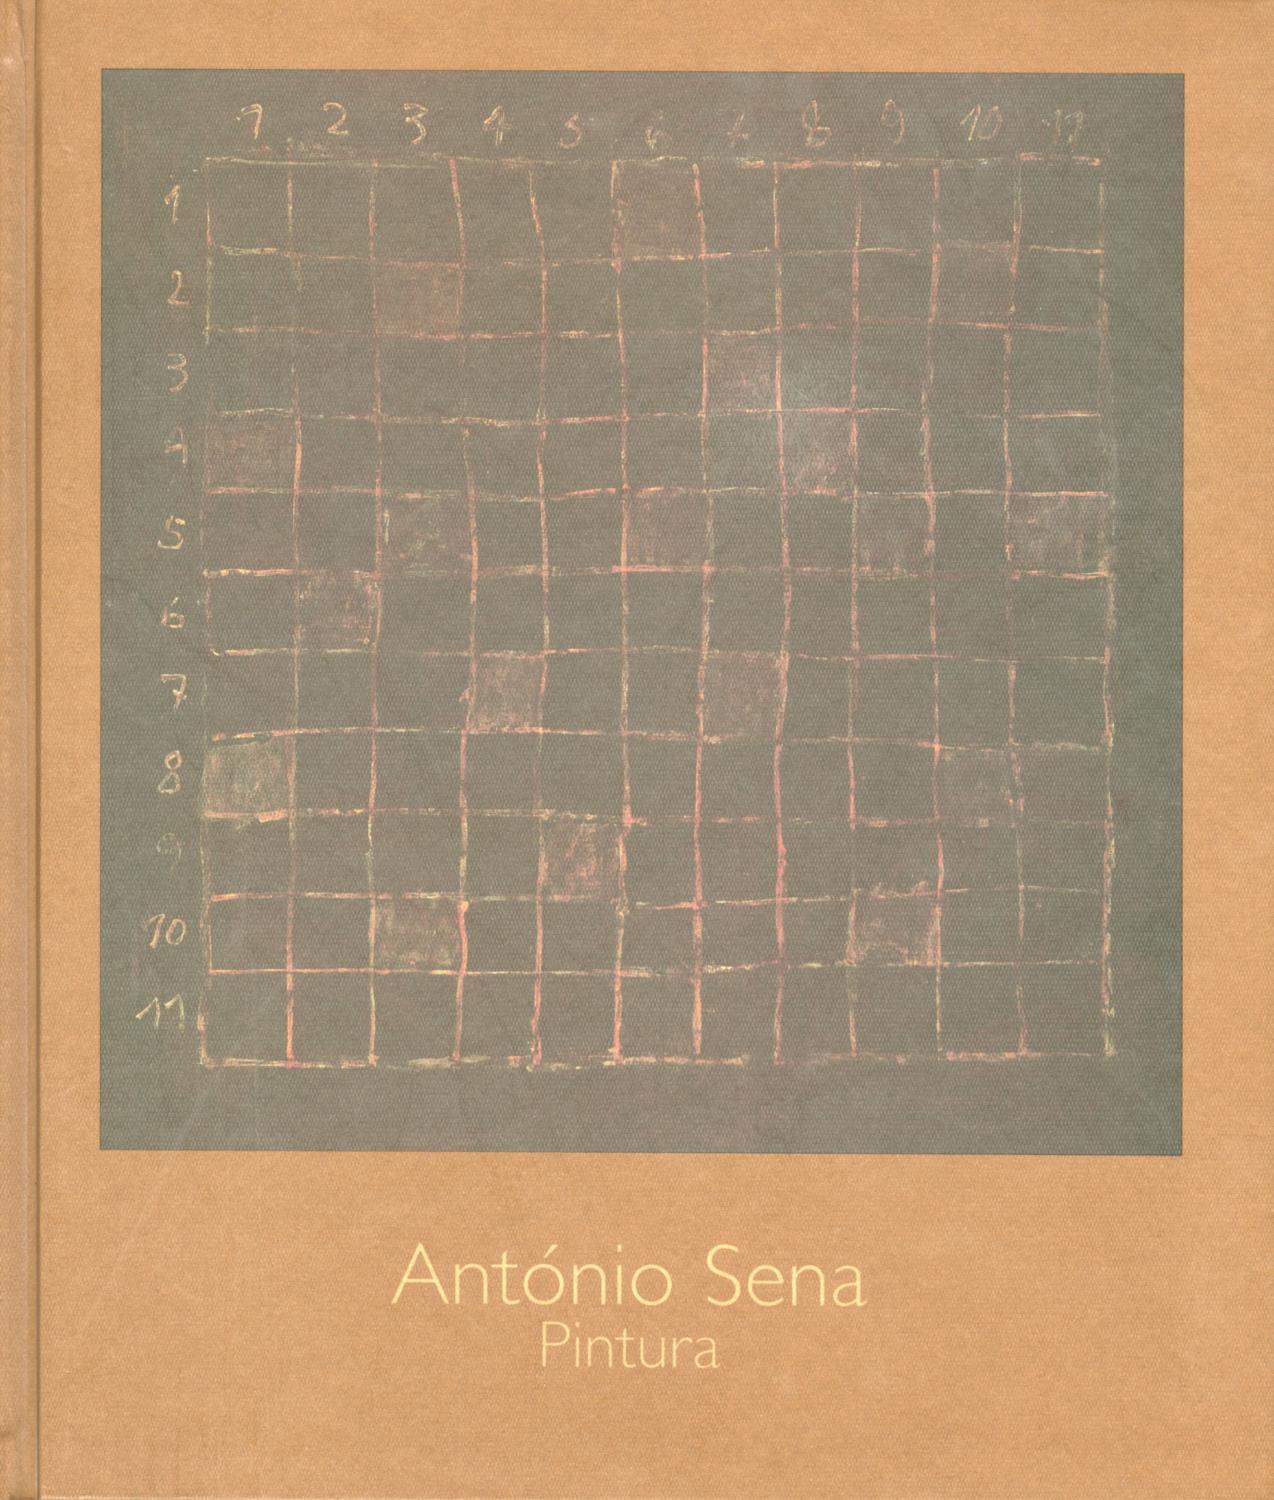 António Sena. Pintura/Painting